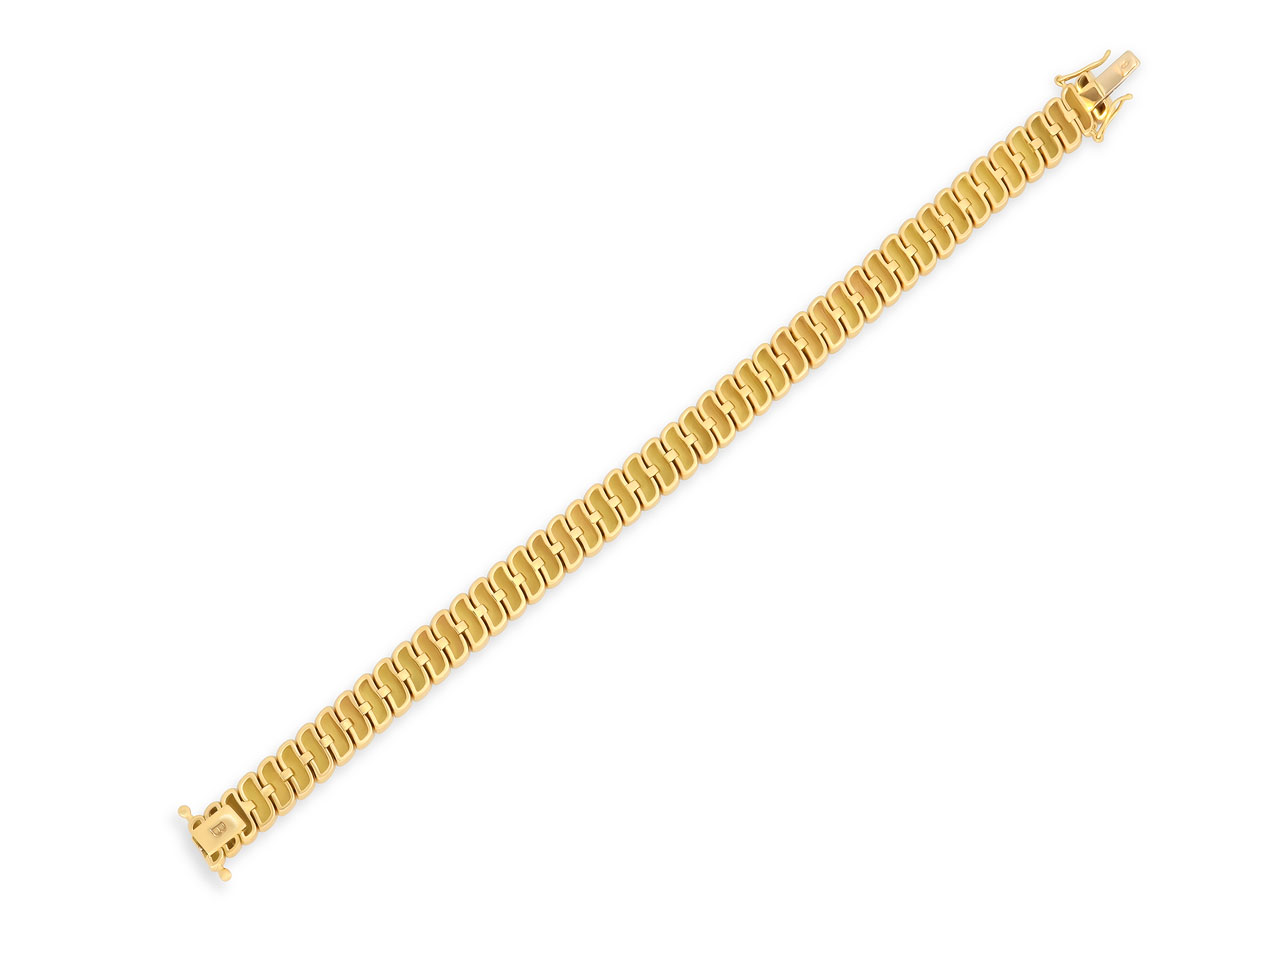 Flexible Link Bracelet in 18K Gold, by Beladora